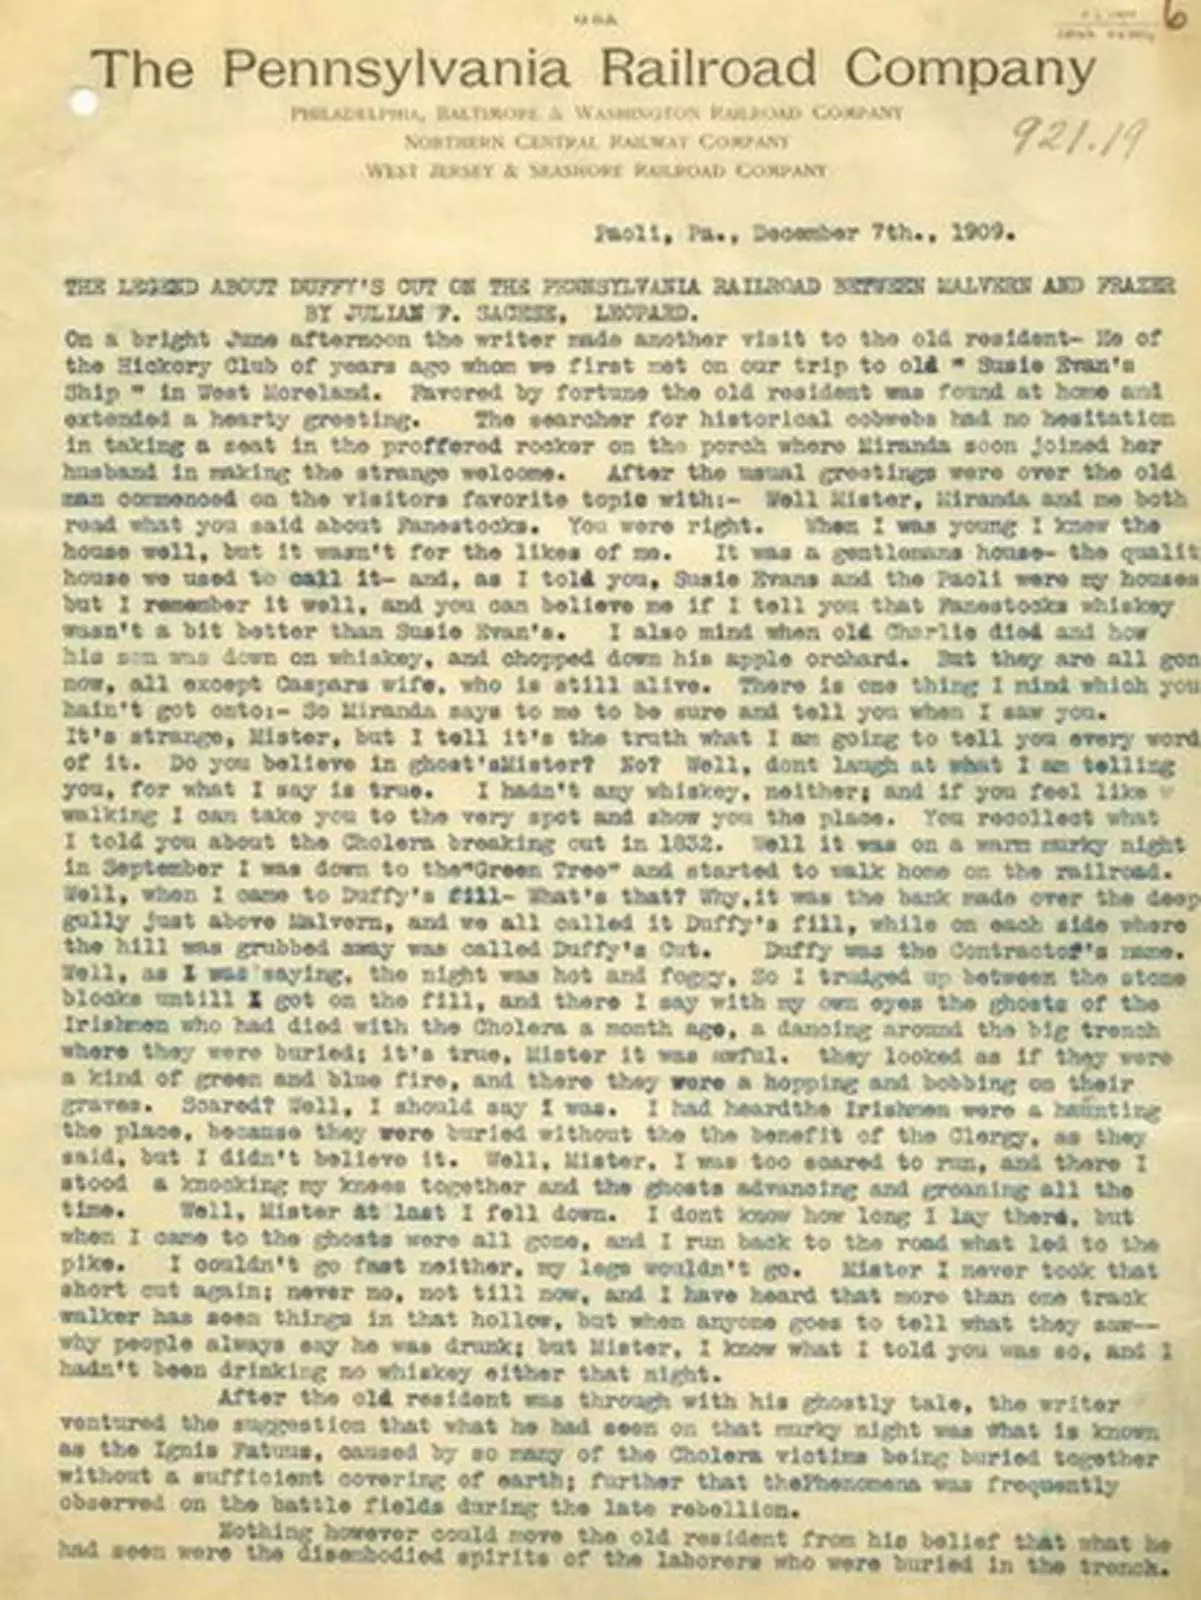 Страница из архива Пенсильванской железной дороги, которую Билл и Фрэнк использовали в своем расследовании.